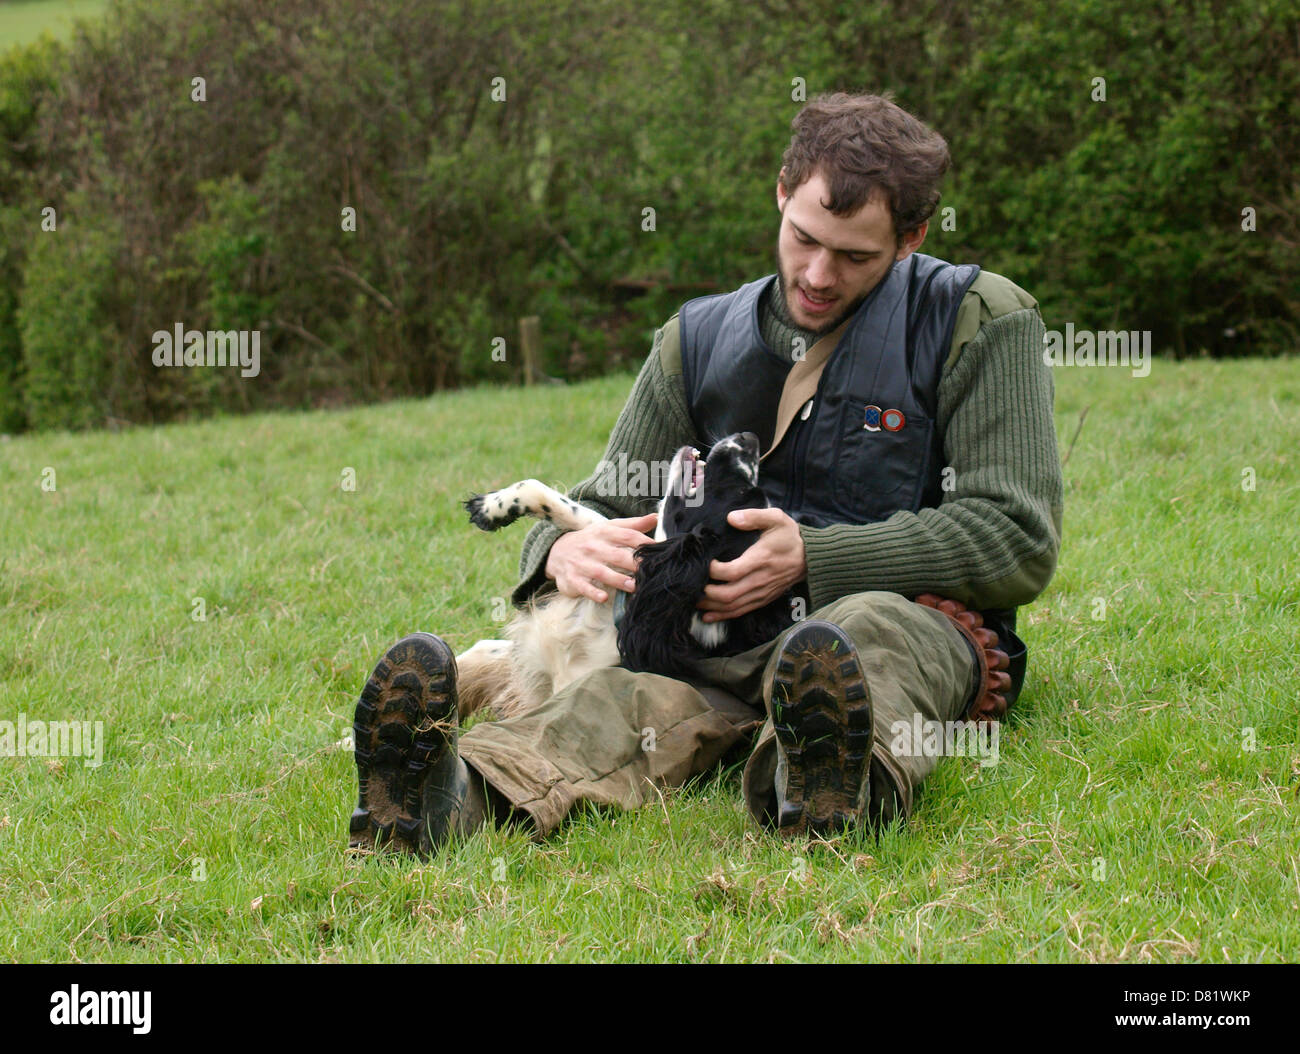 Di affetto fra uomo e cane, Regno Unito 2013 Foto Stock